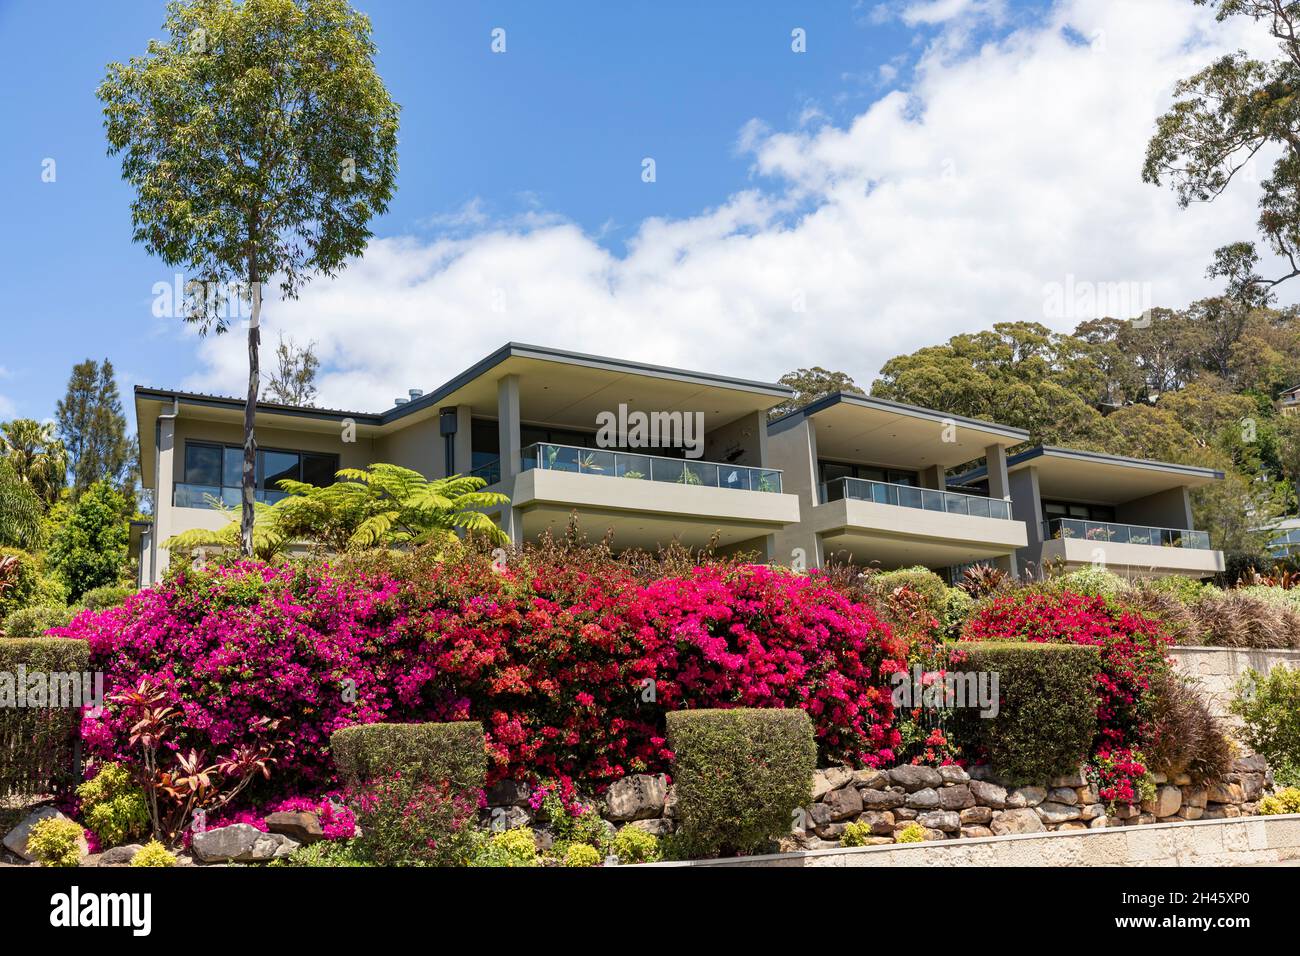 Bayview Sydney, Appartementhäuser mit Bougainvillea, die im Vorgarten blüht, Sydney Northern Beaches Region, NSW, Australien Stockfoto